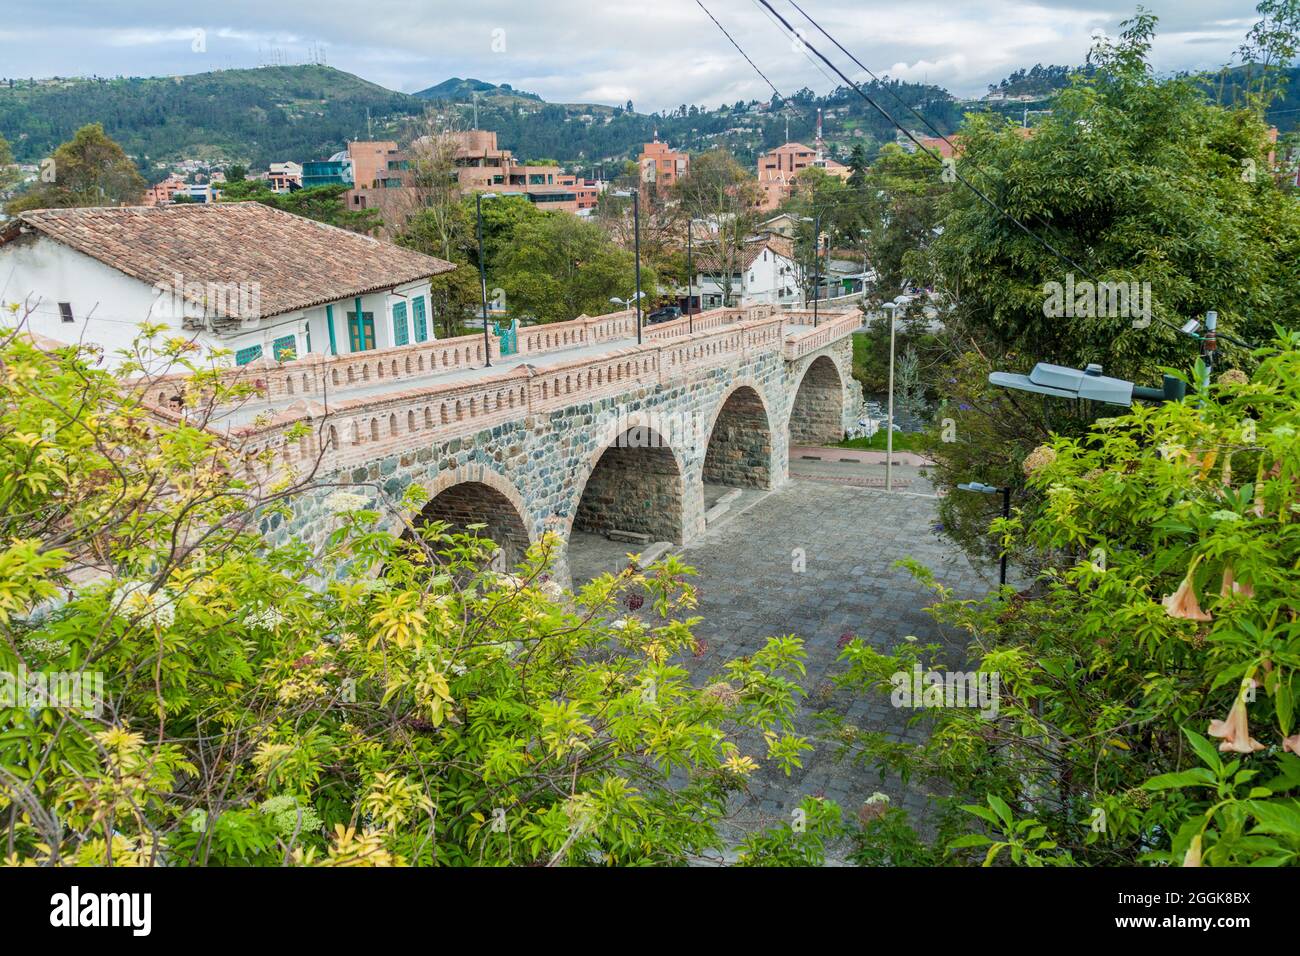 Puente Roto (Broken Bridge) in Cuenca, Ecuador Stock Photo - Alamy